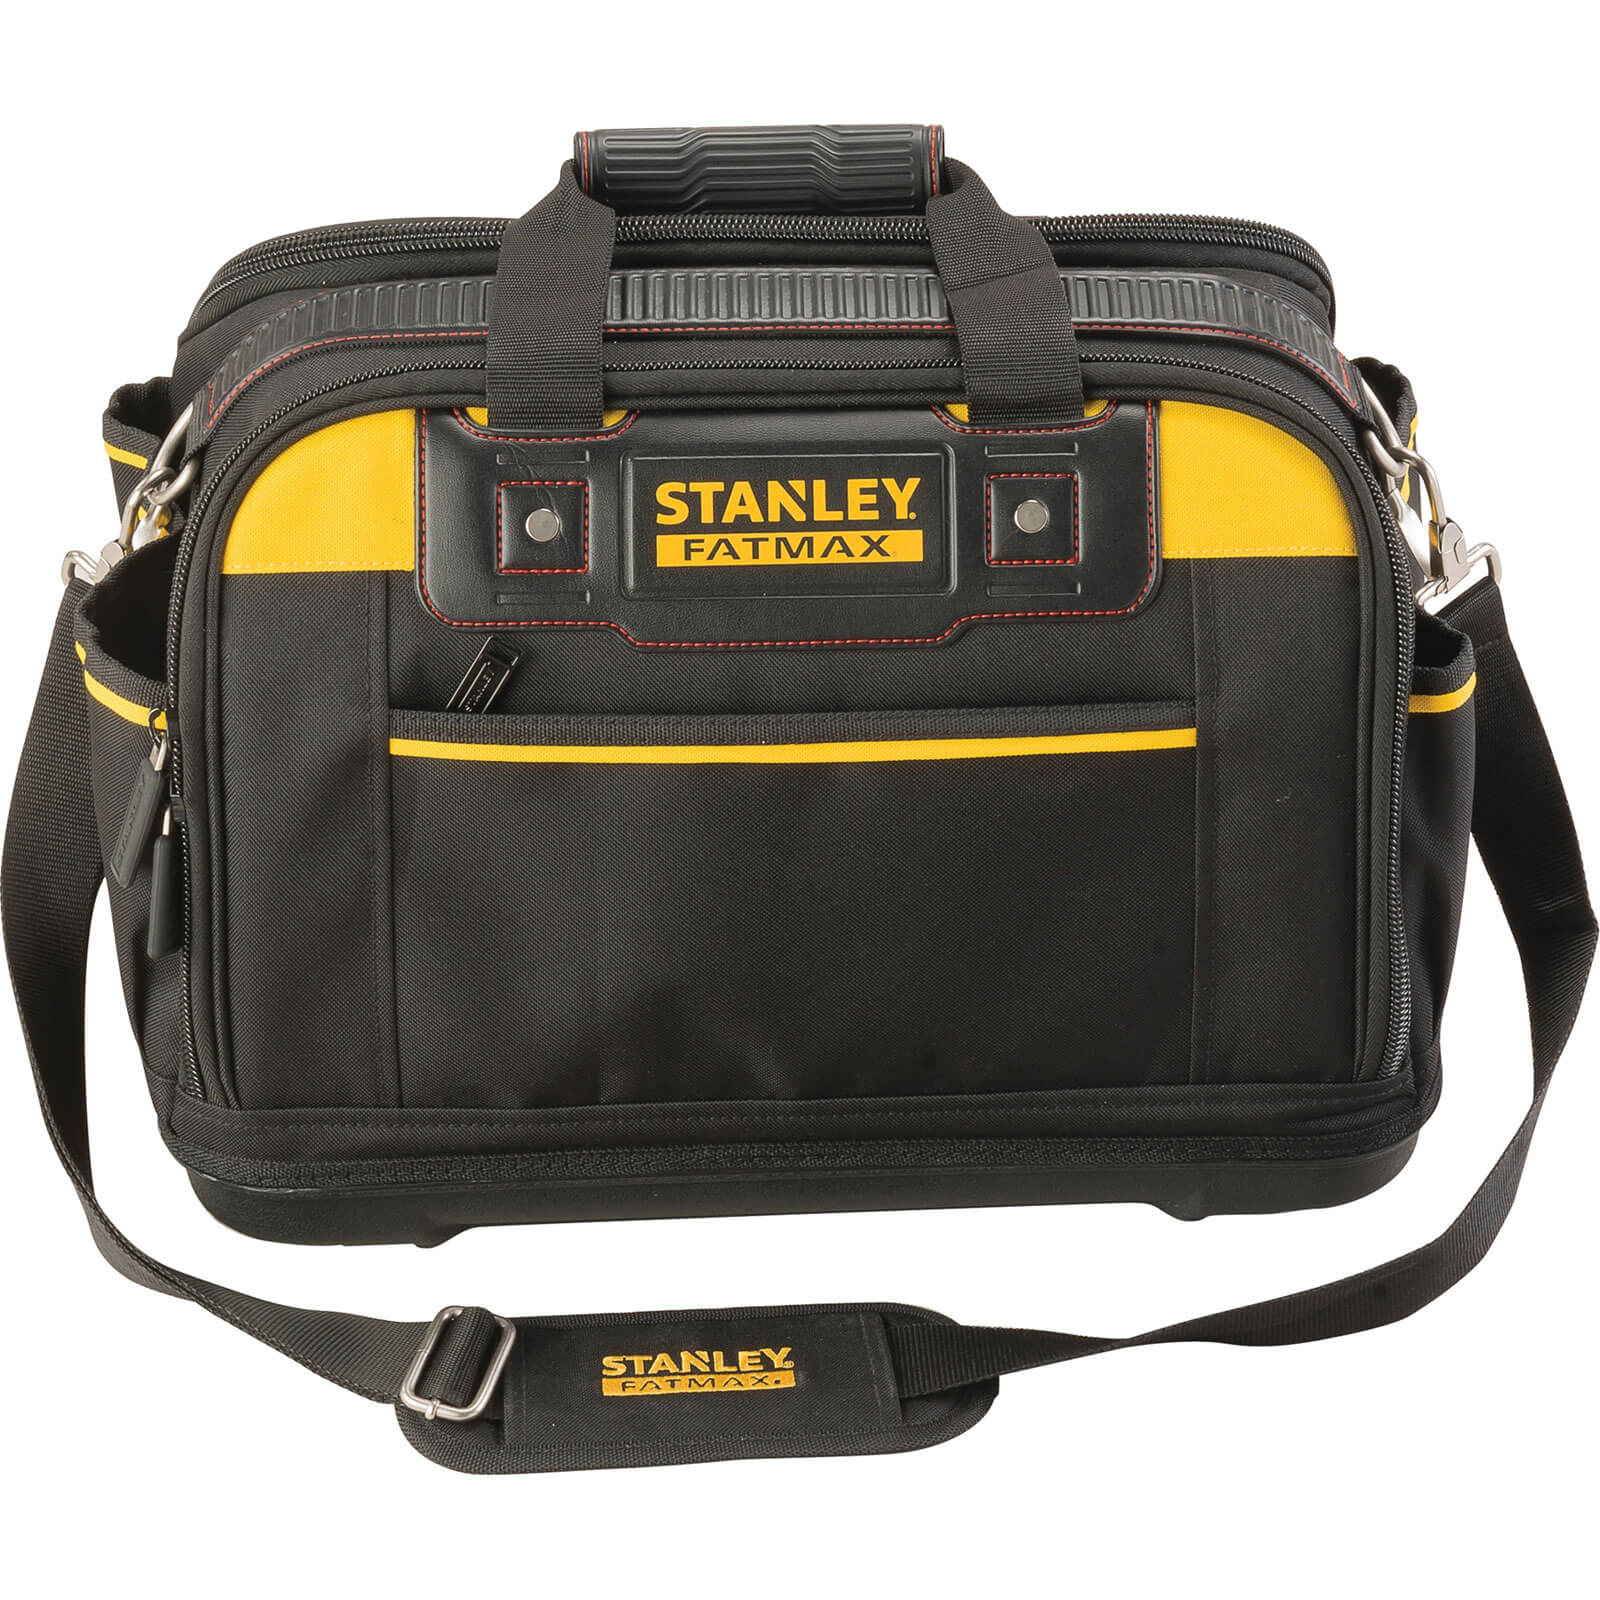 Stanley FatMax Multi Access Tool Bag 430mm